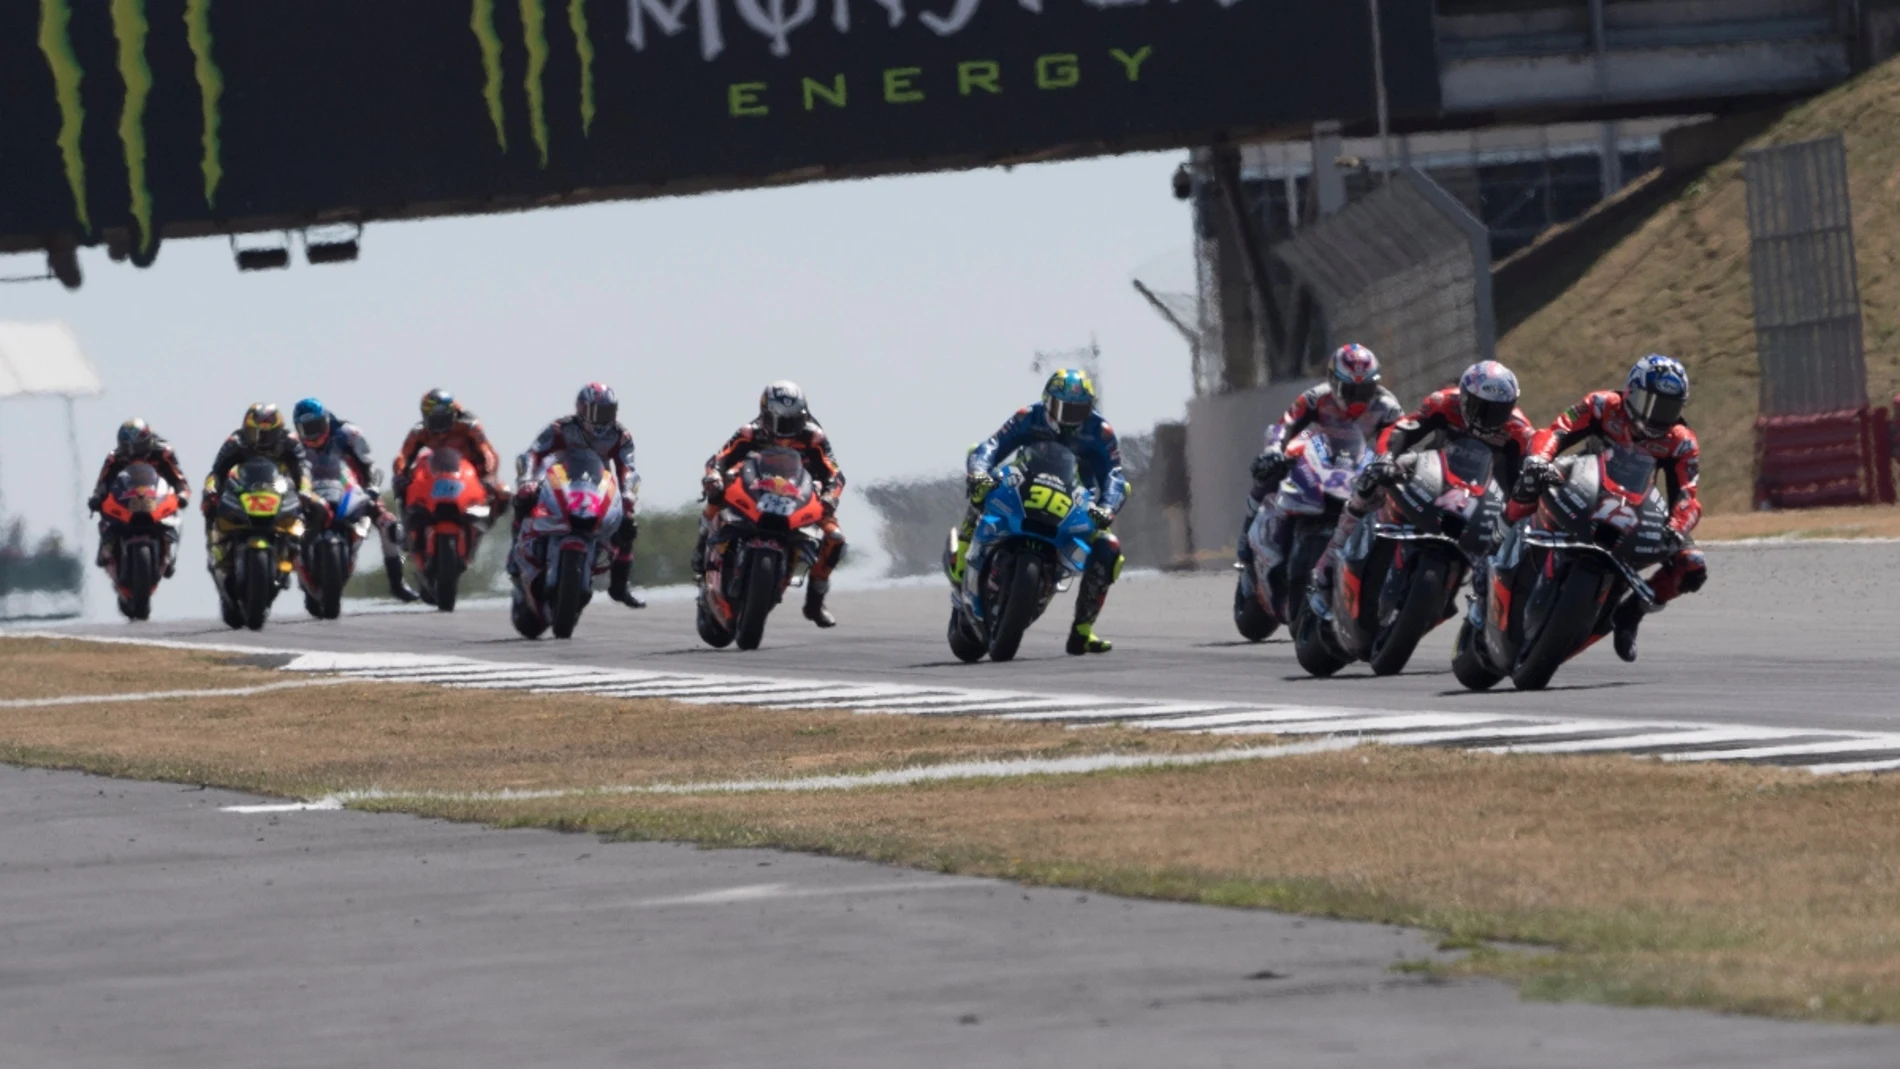 MotoGP anuncia oficialmente formato para fins de semana com corridas sprint  - Notícia de MotoGP